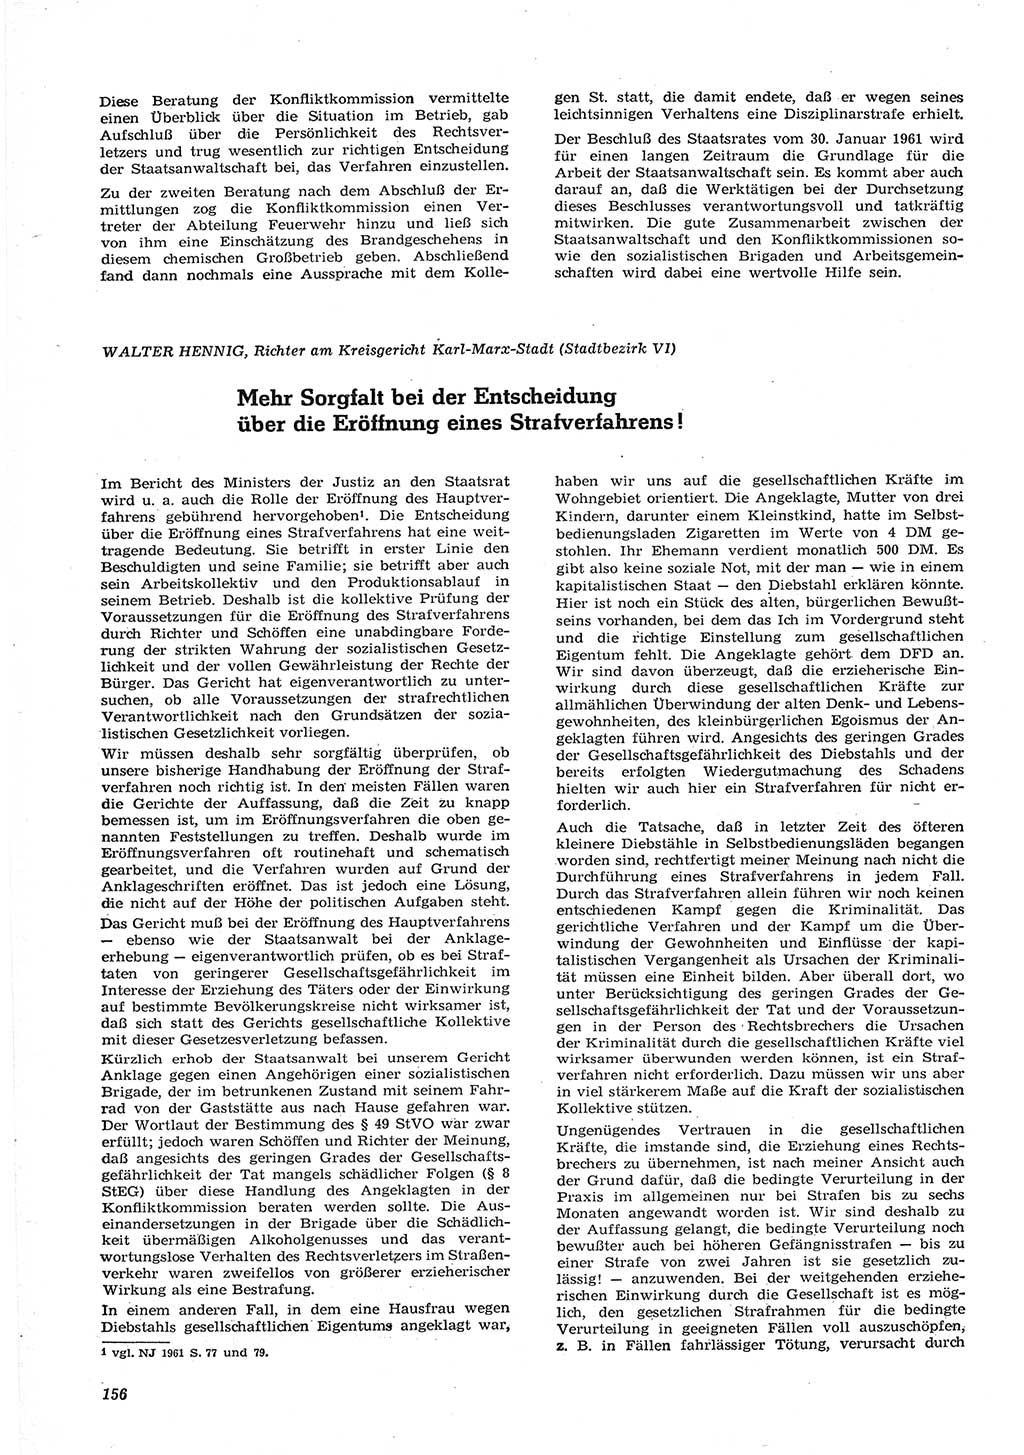 Neue Justiz (NJ), Zeitschrift für Recht und Rechtswissenschaft [Deutsche Demokratische Republik (DDR)], 15. Jahrgang 1961, Seite 156 (NJ DDR 1961, S. 156)